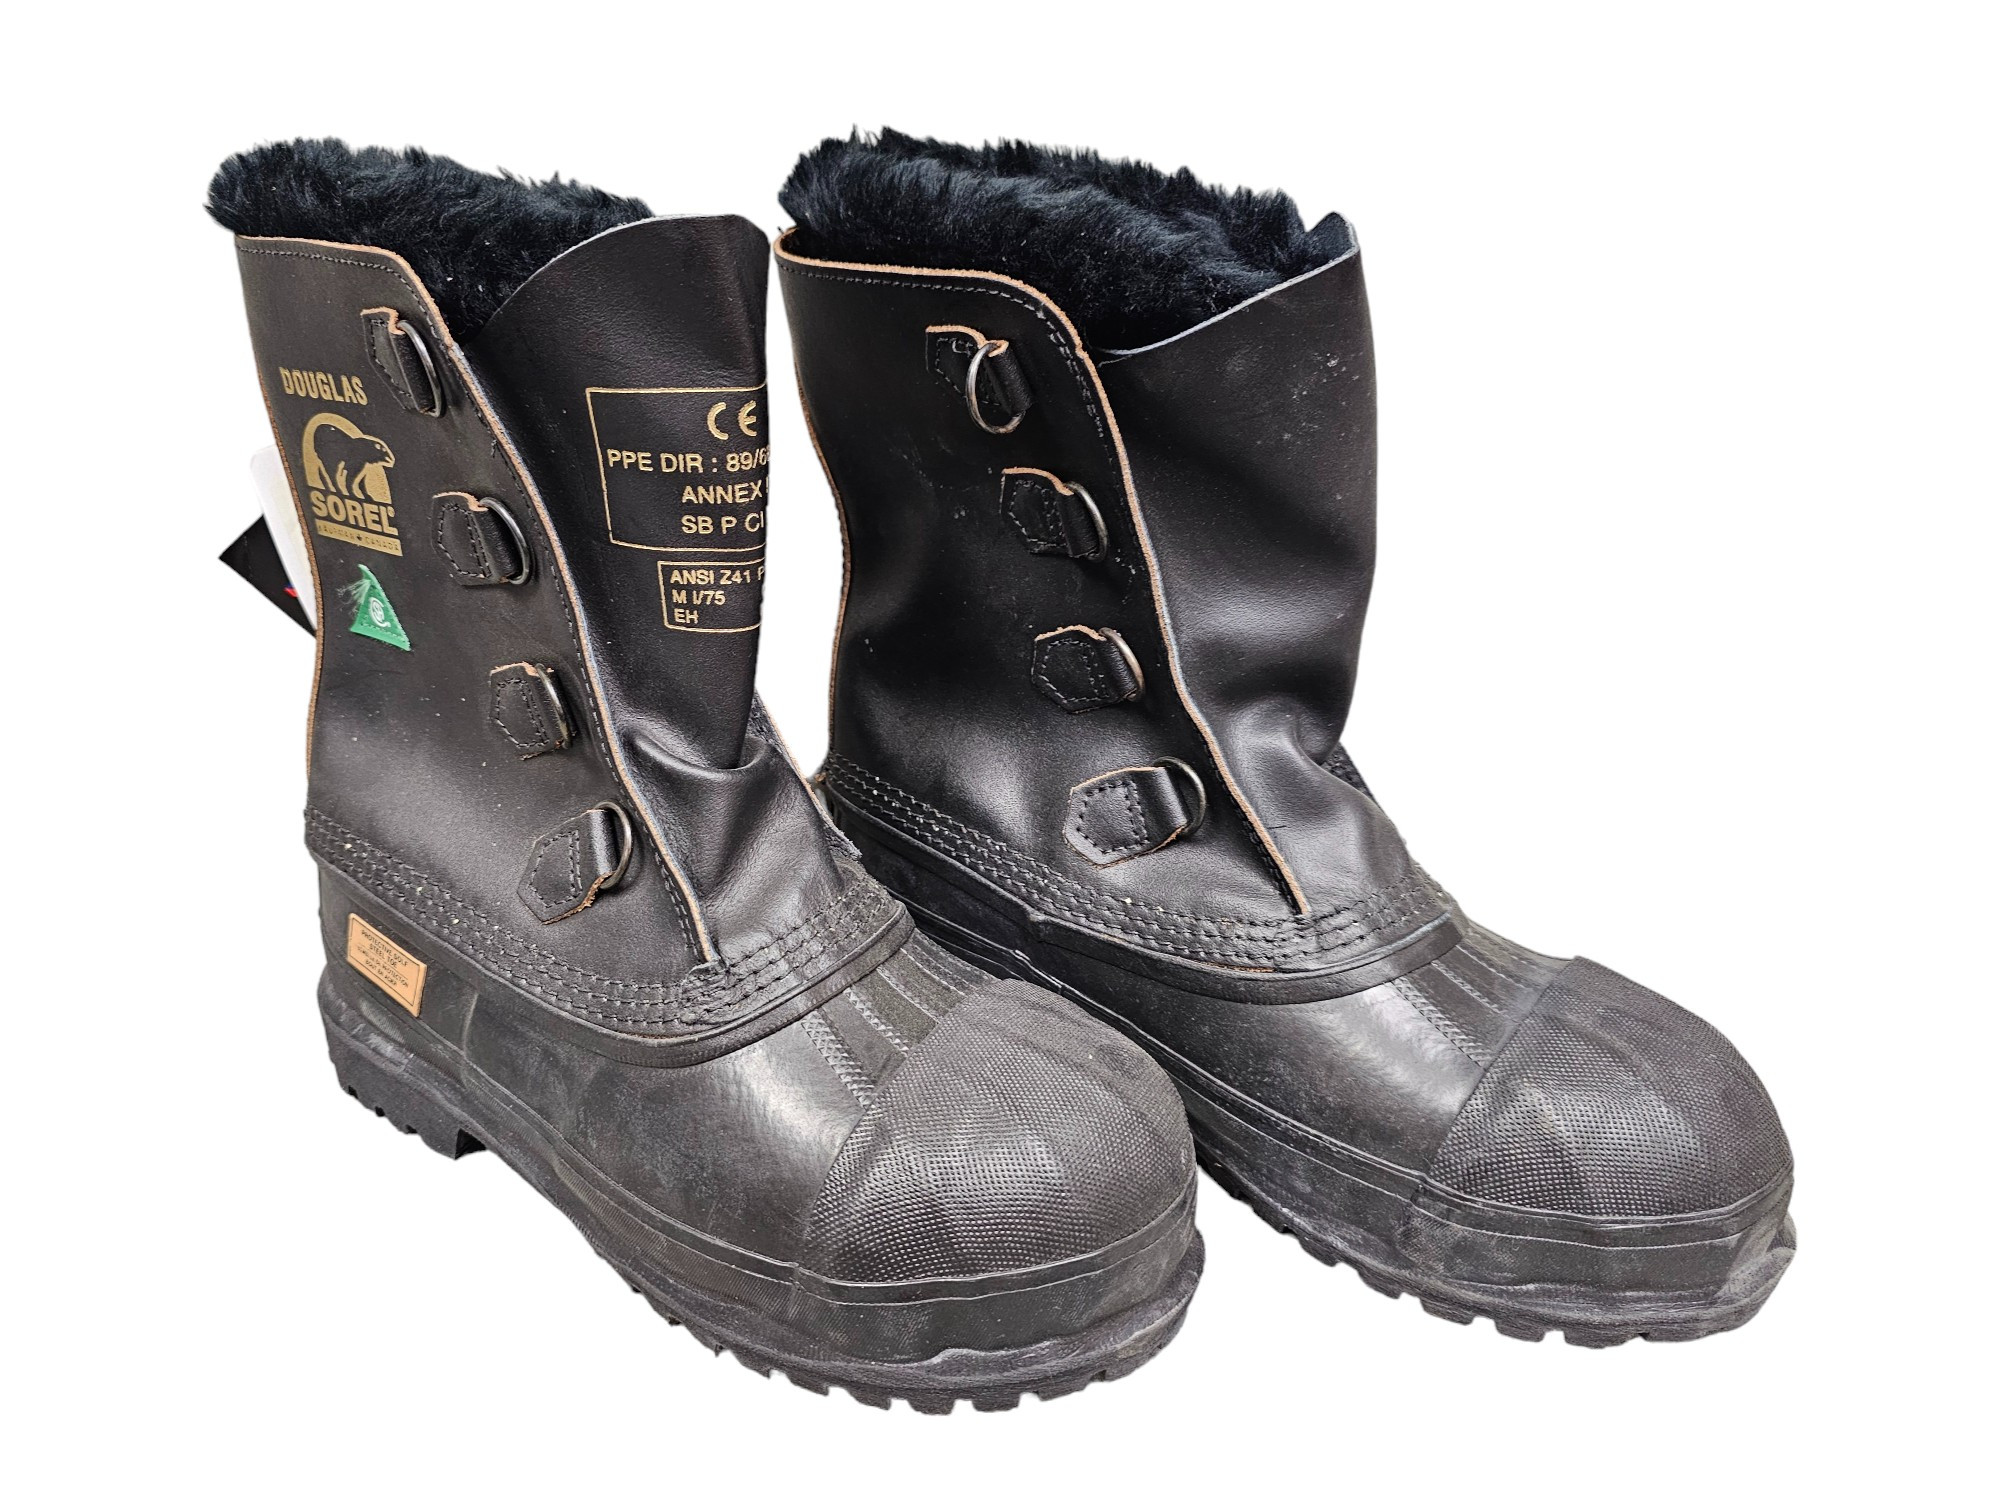 Douglas Sorel C.S.A. Size 6 Cold Weather Boots